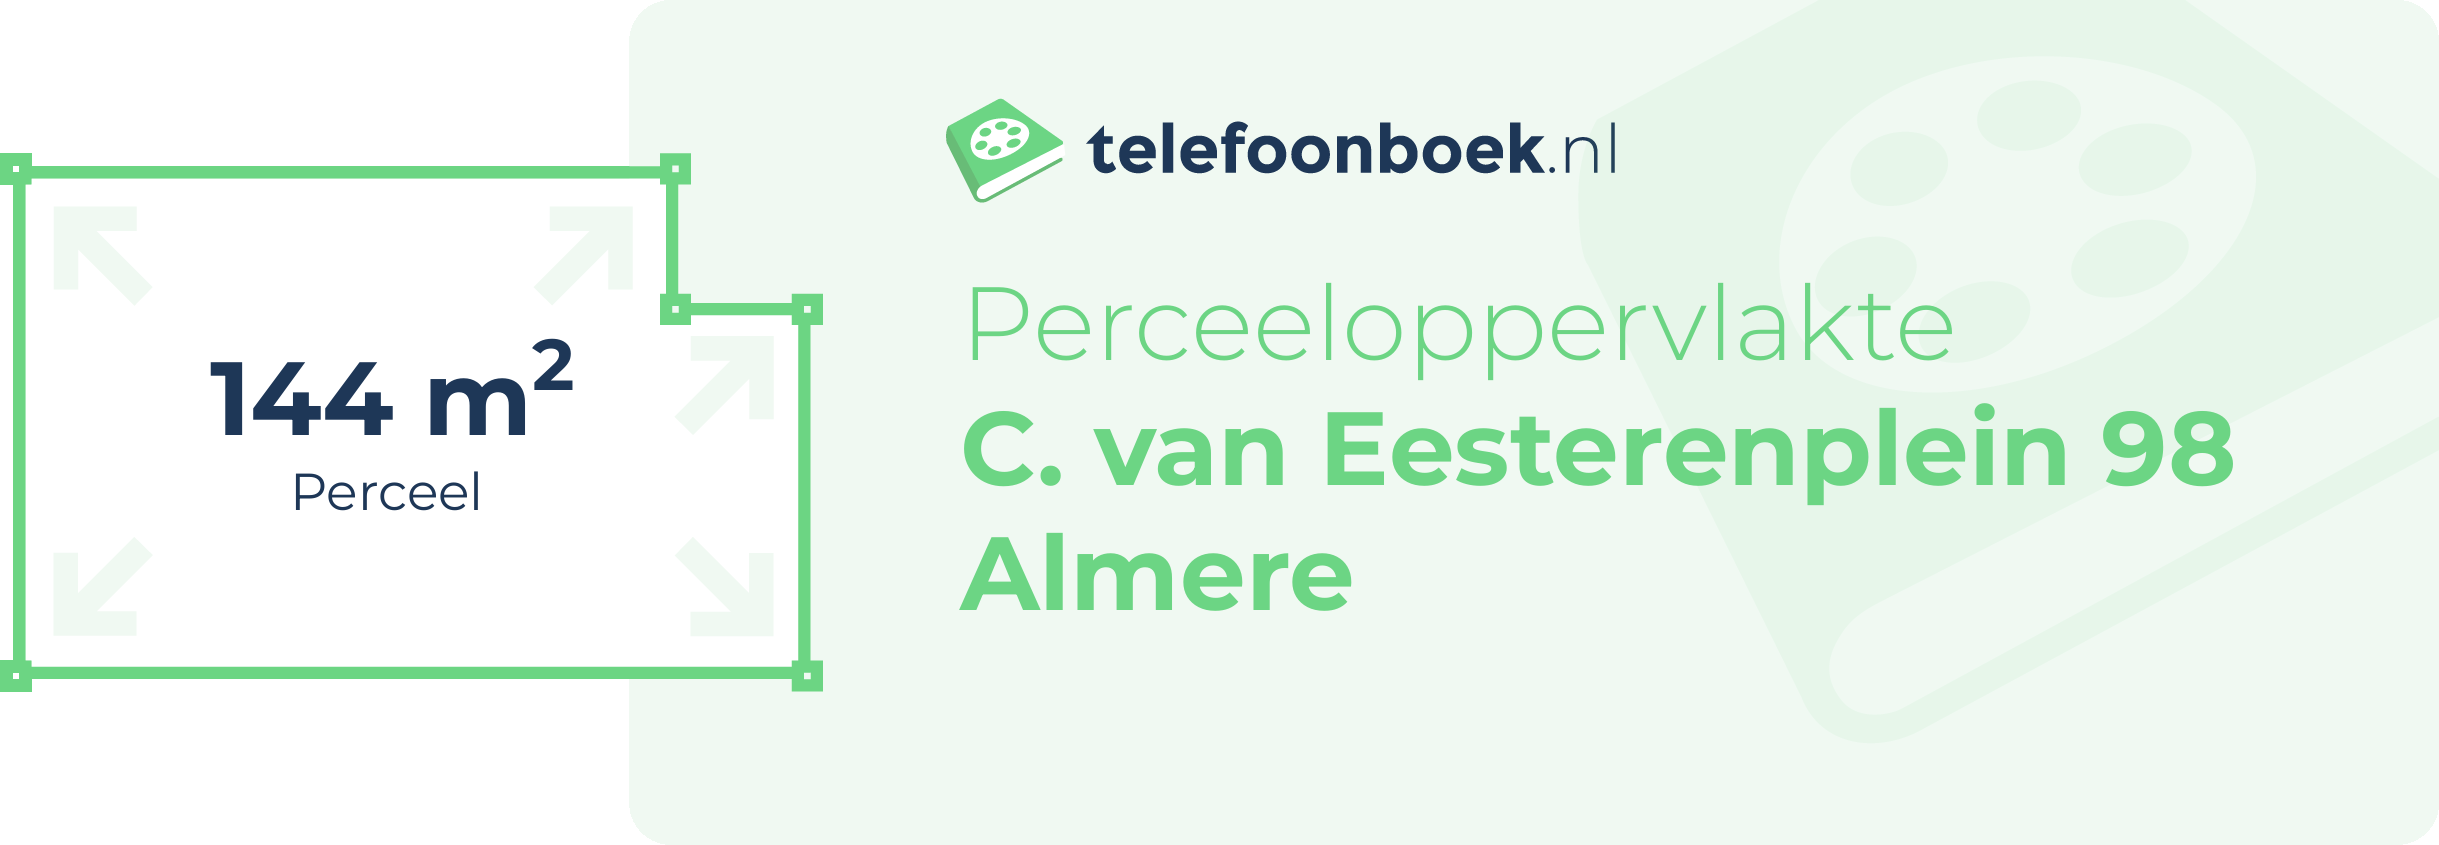 Perceeloppervlakte C. Van Eesterenplein 98 Almere